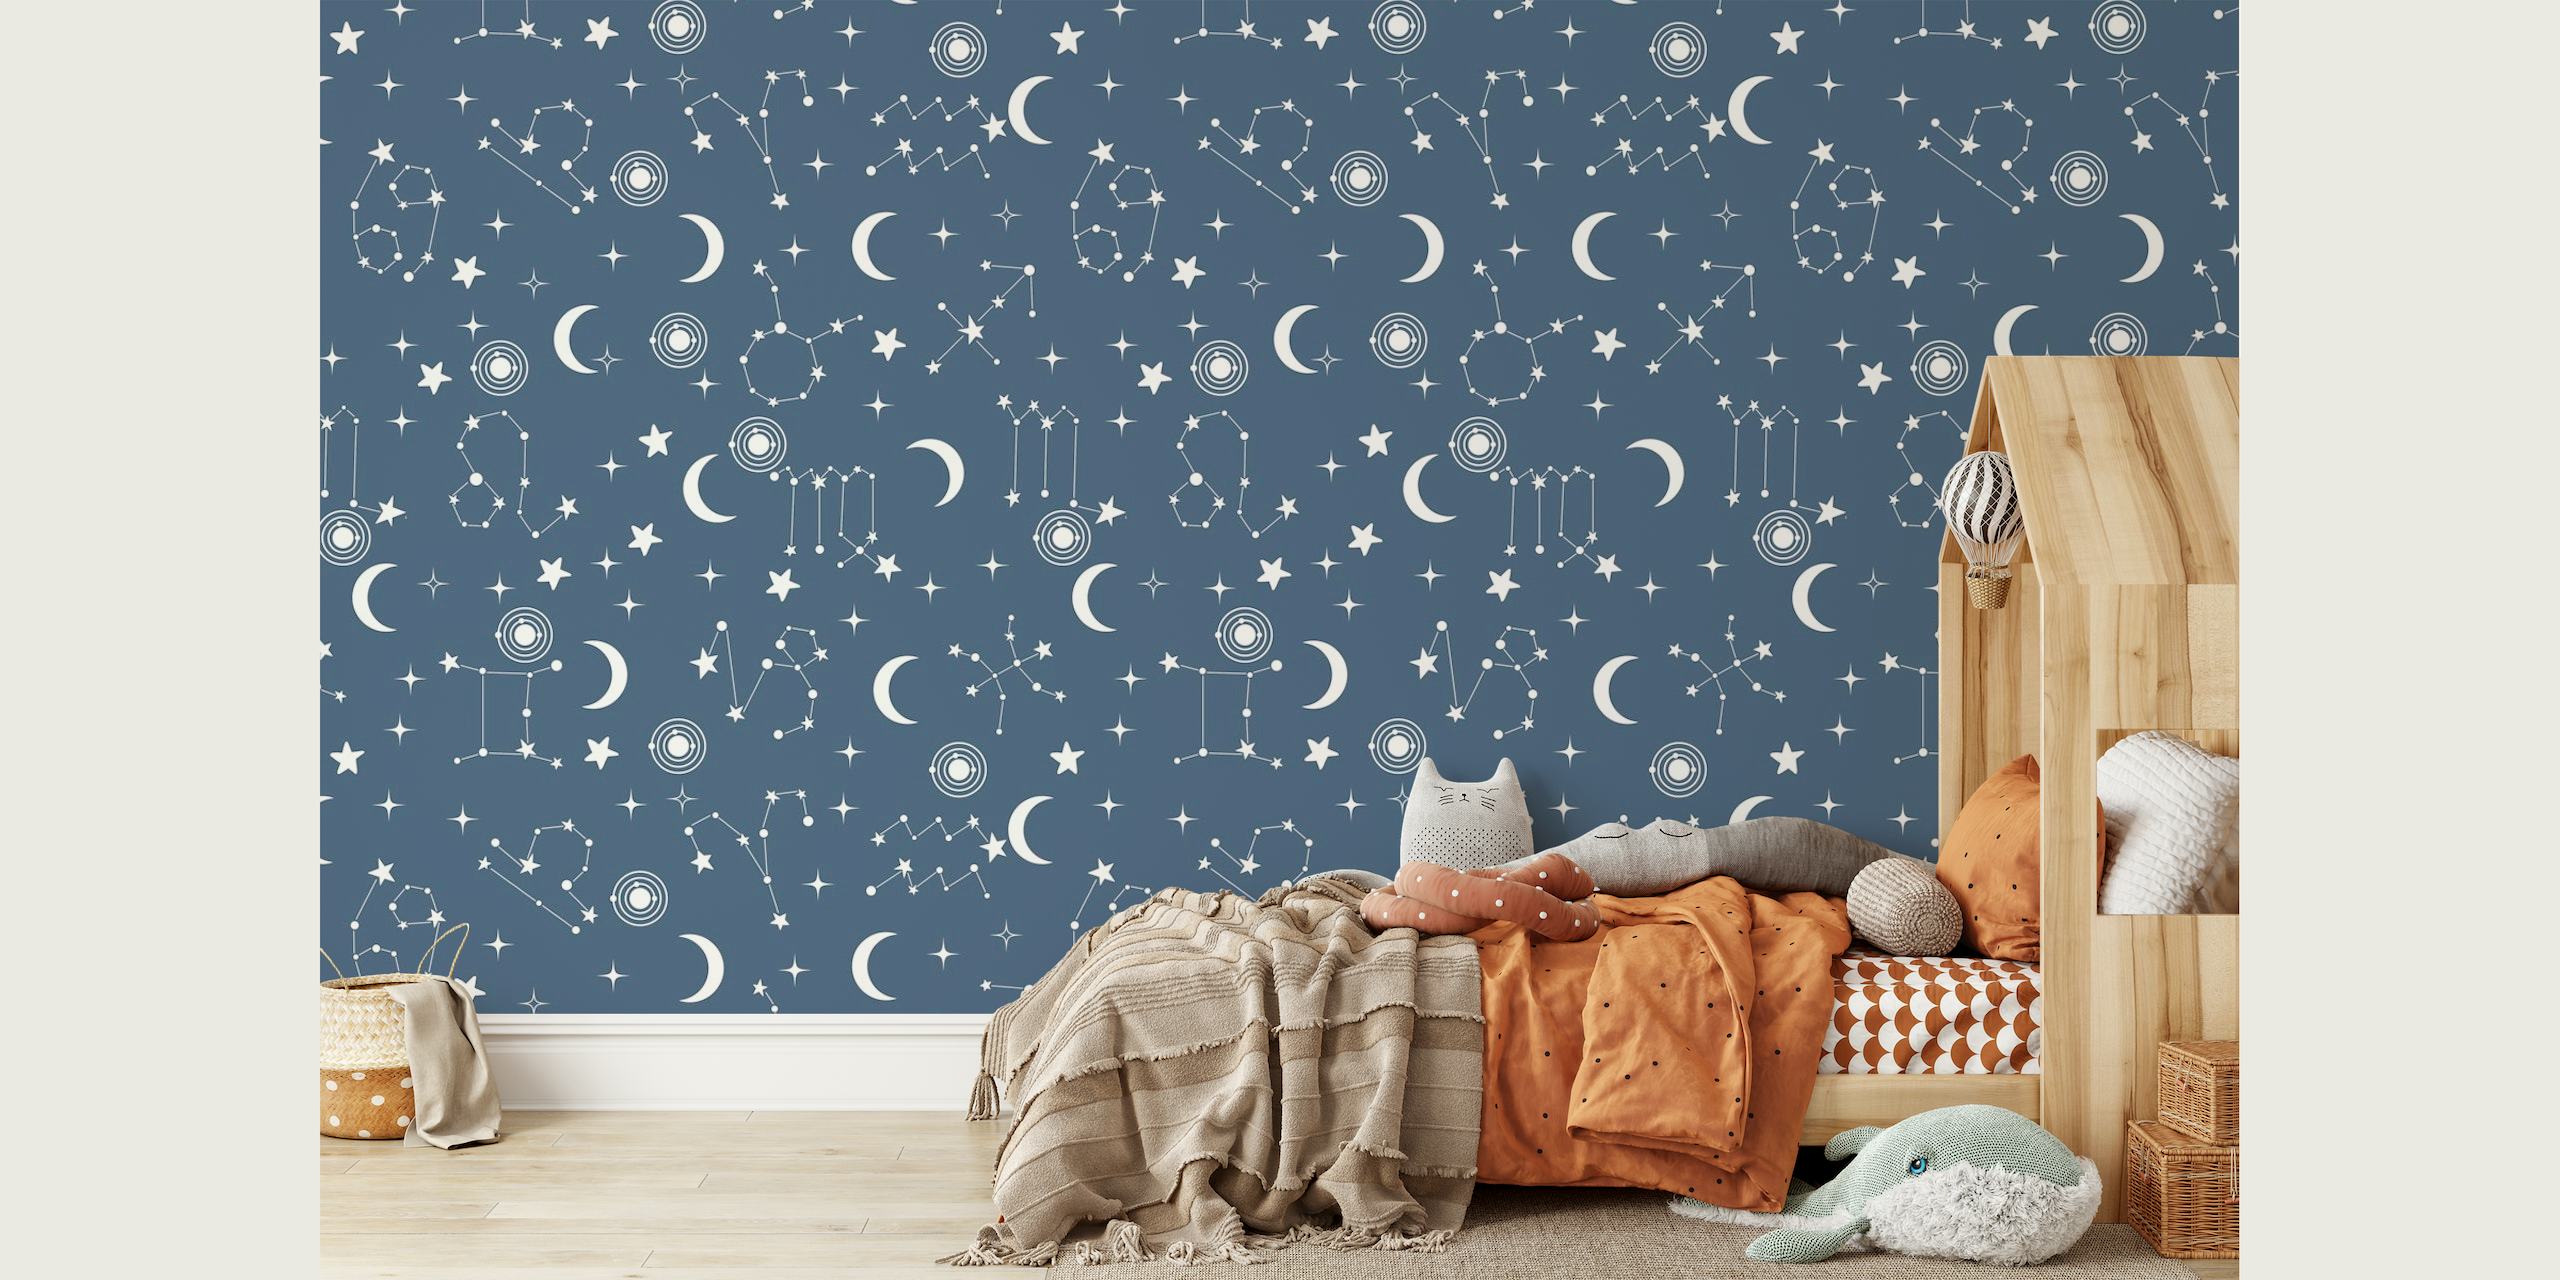 Une fresque murale bleue présentant un motif d'étoiles et de constellations